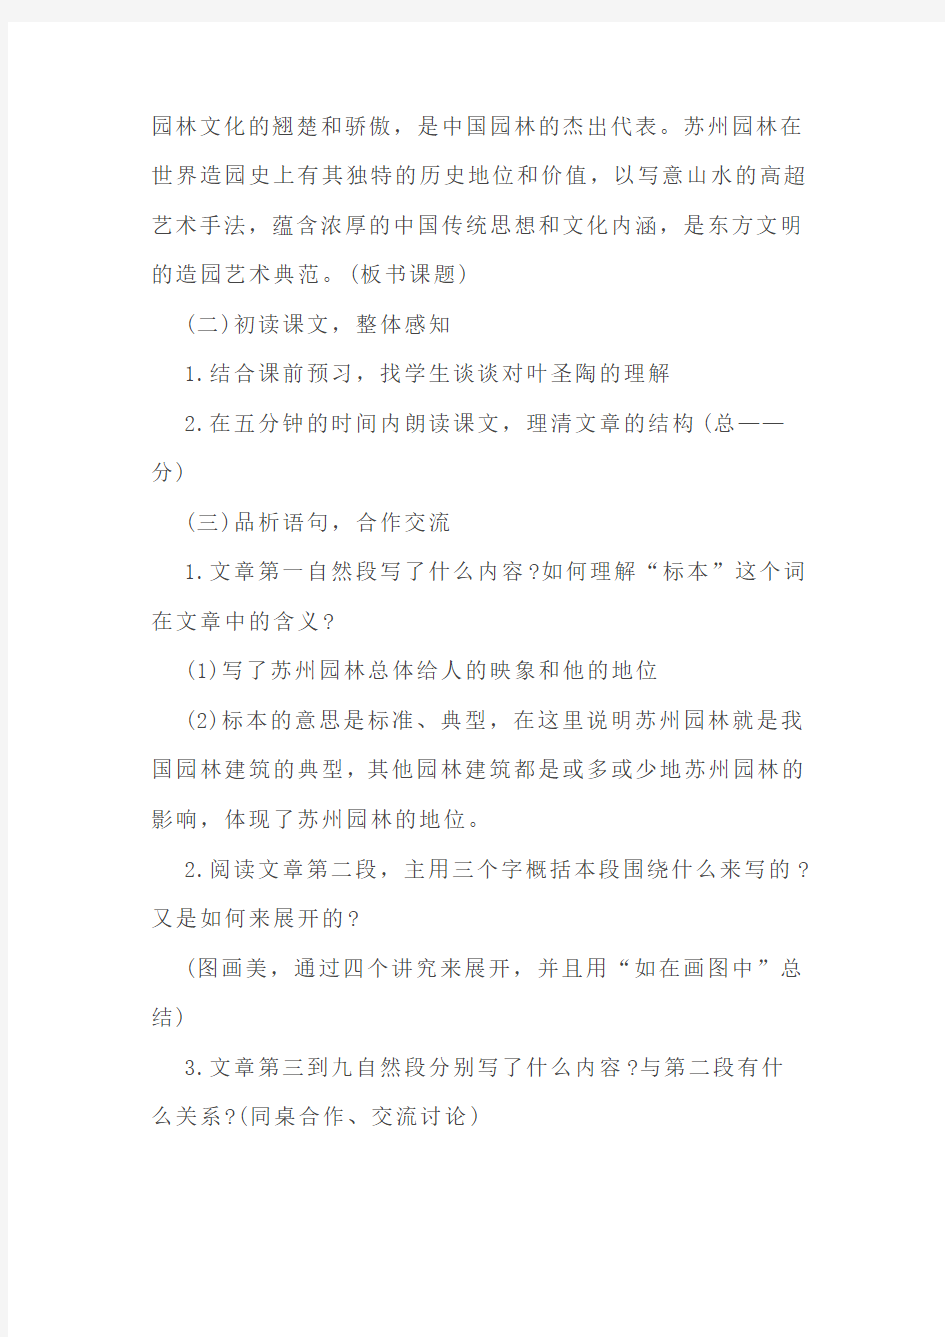 初中语文面试试讲真题《苏州园林》教案、教学设计